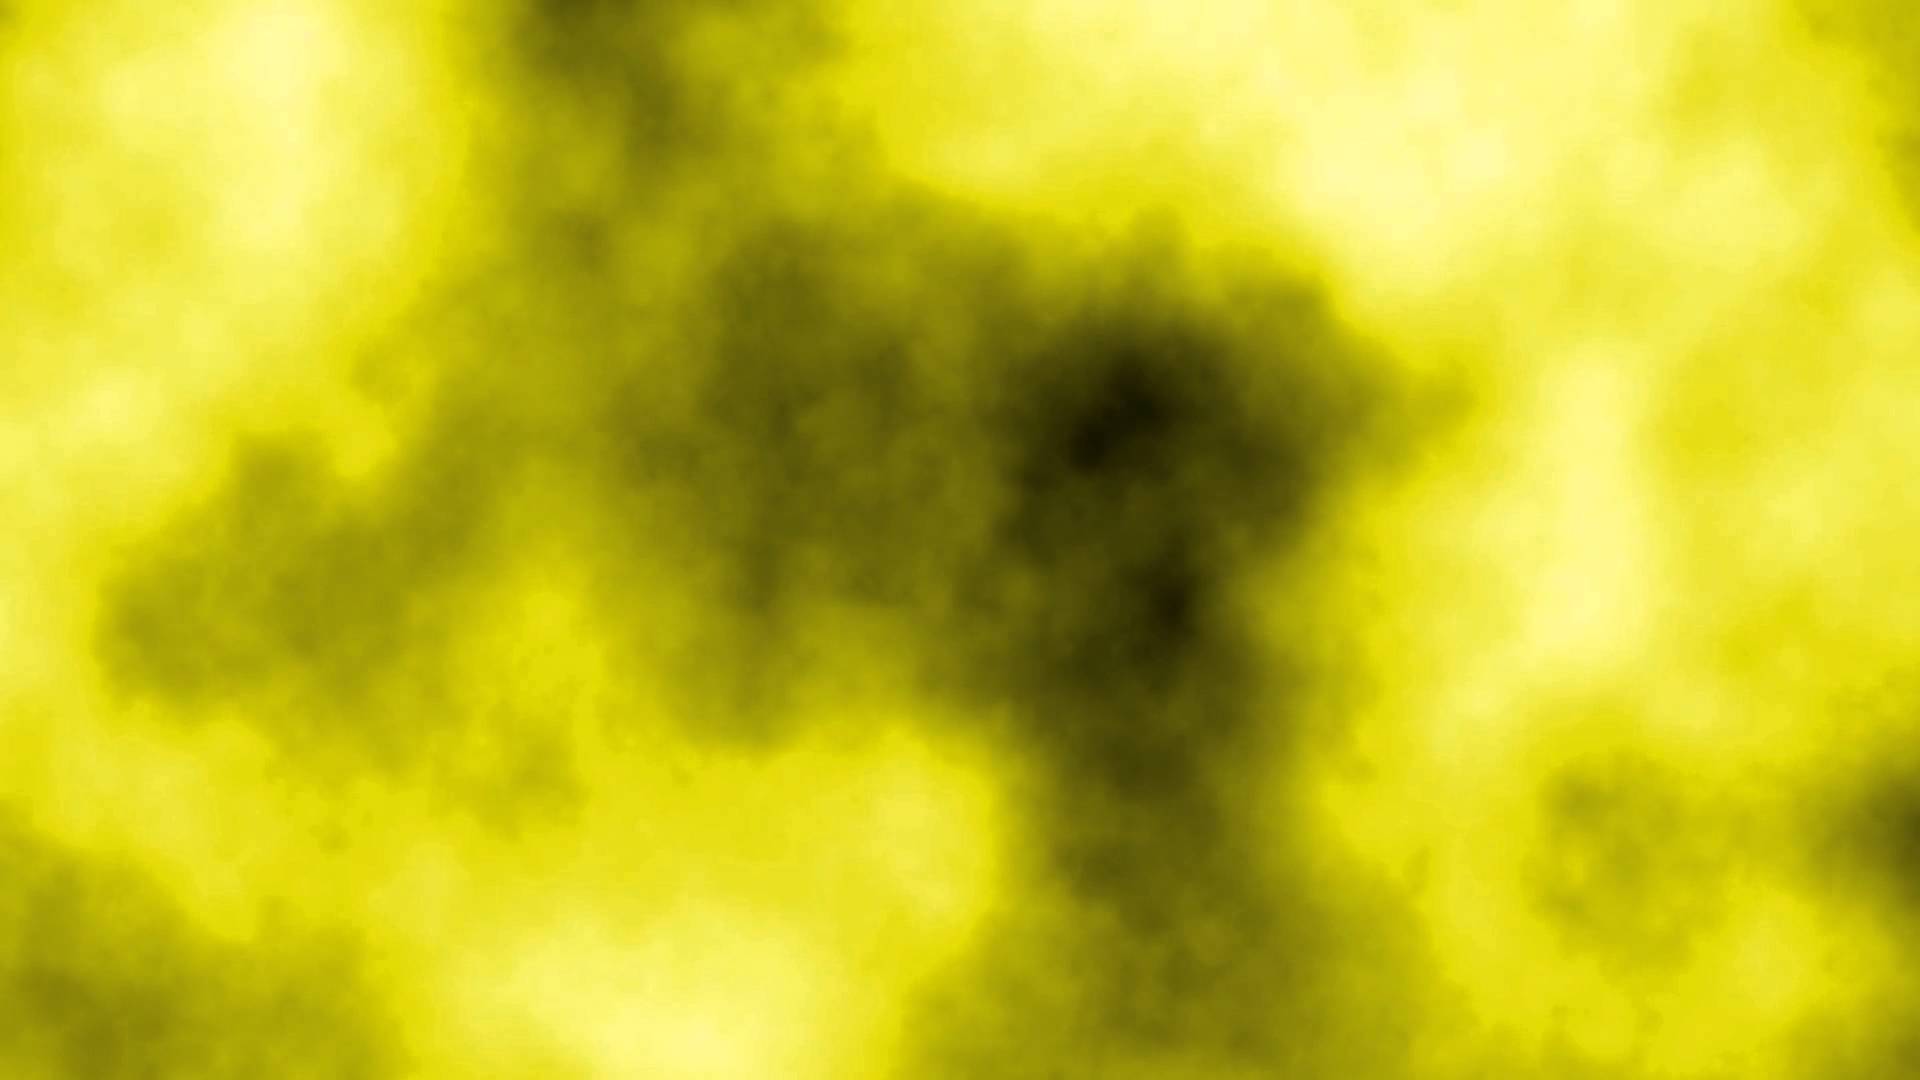 Free photo: Yellow Smoke Background - Abstract, Smoke ...